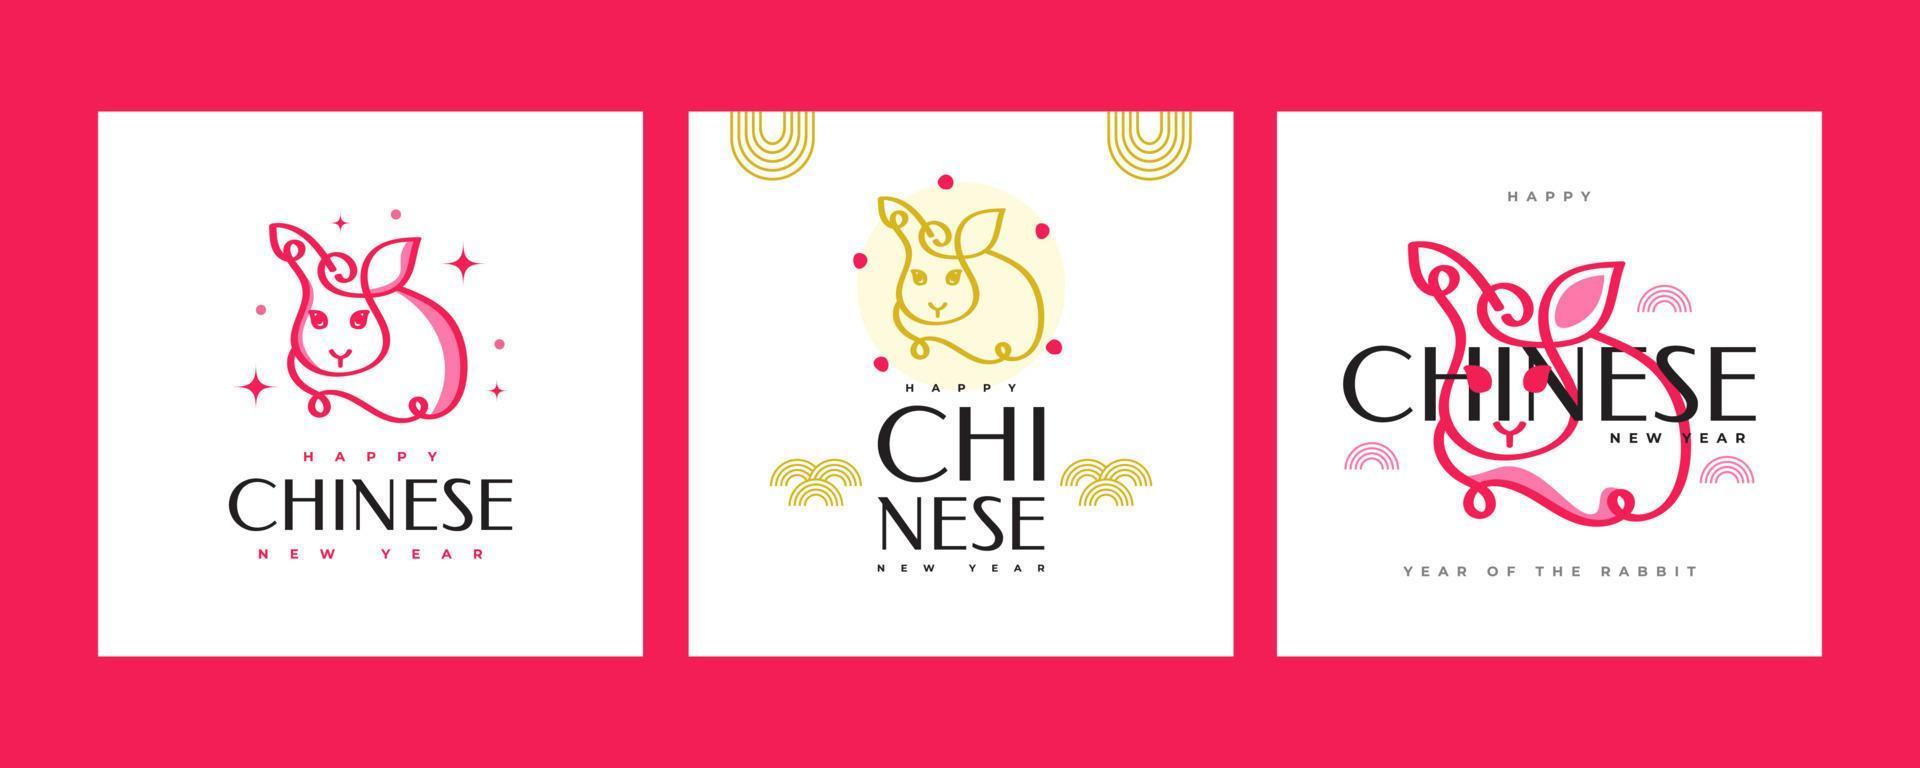 2023 chinesisches neujahr - jahr des kaninchenplakatsets. minimale und trendige plakatvorlage mit niedlicher kaninchenillustration vektor